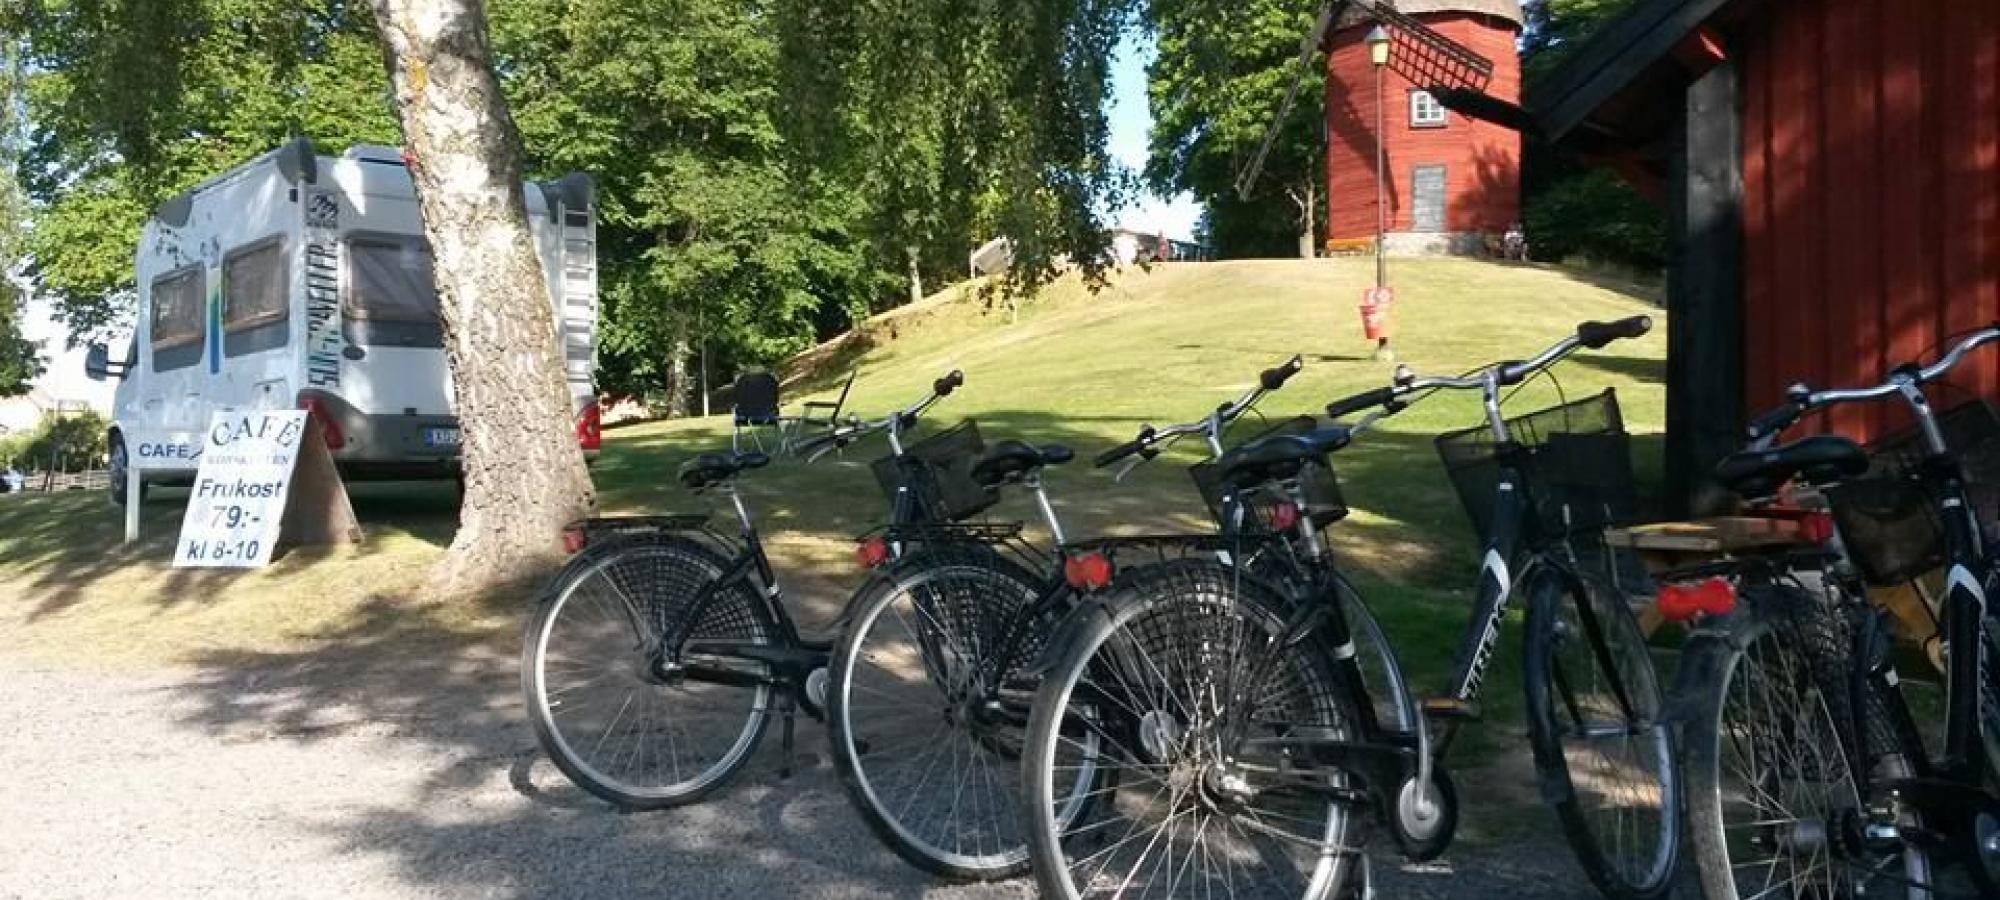 Söderköping/Mangelgården, STF Hostel